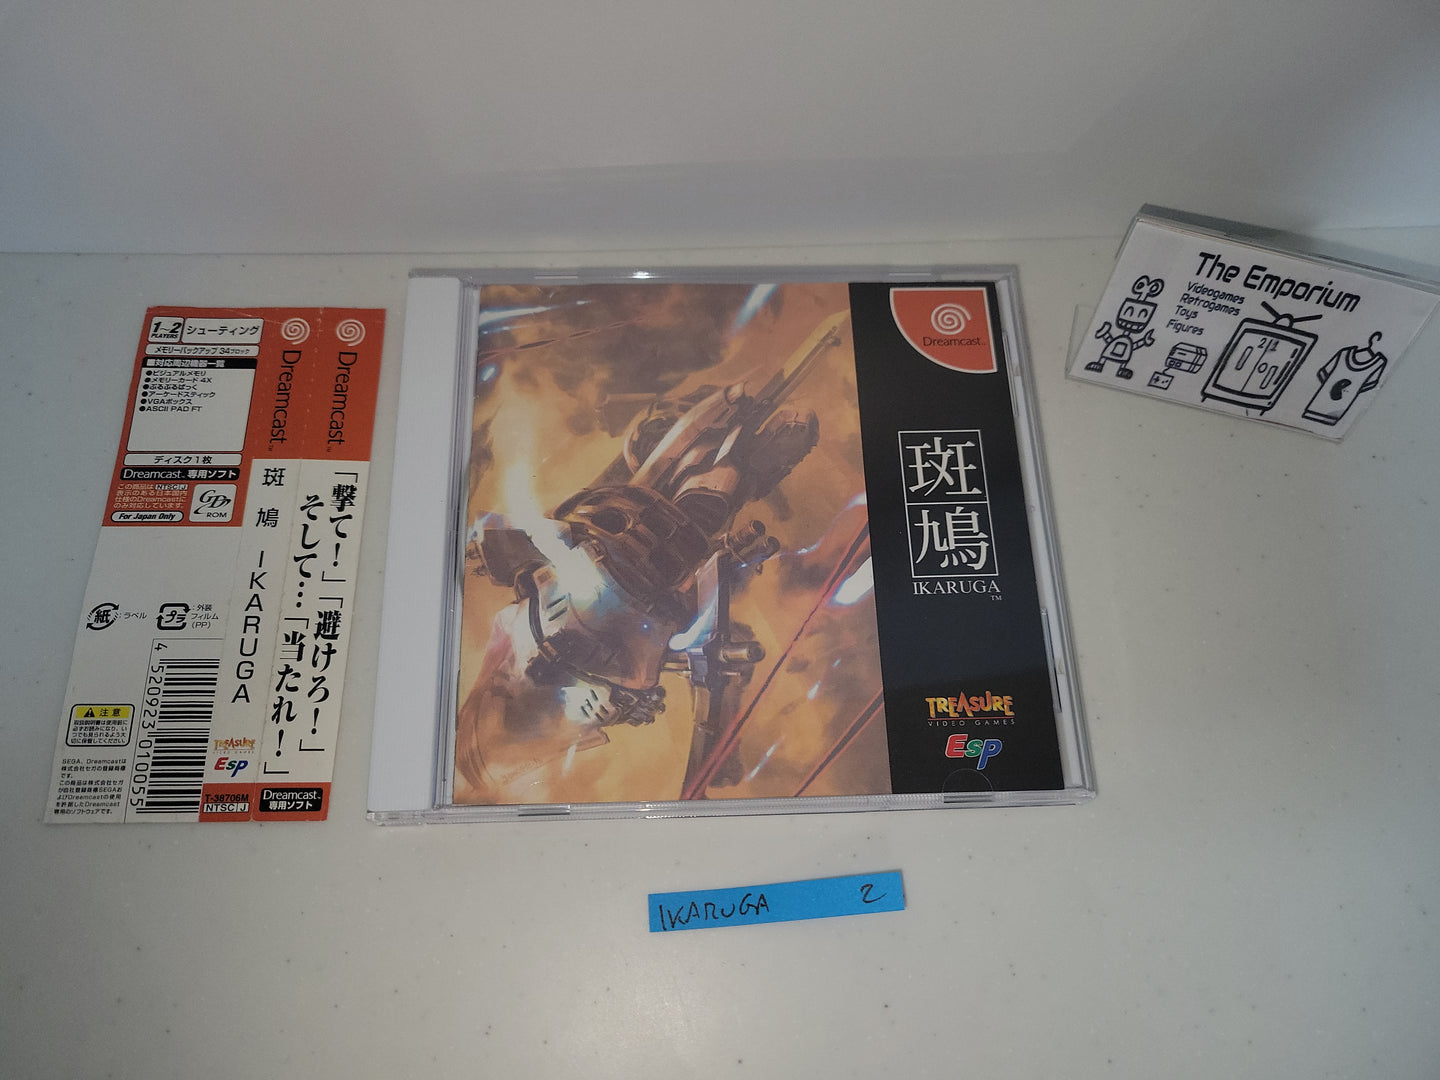 Ikaruga - Sega dc Dreamcast